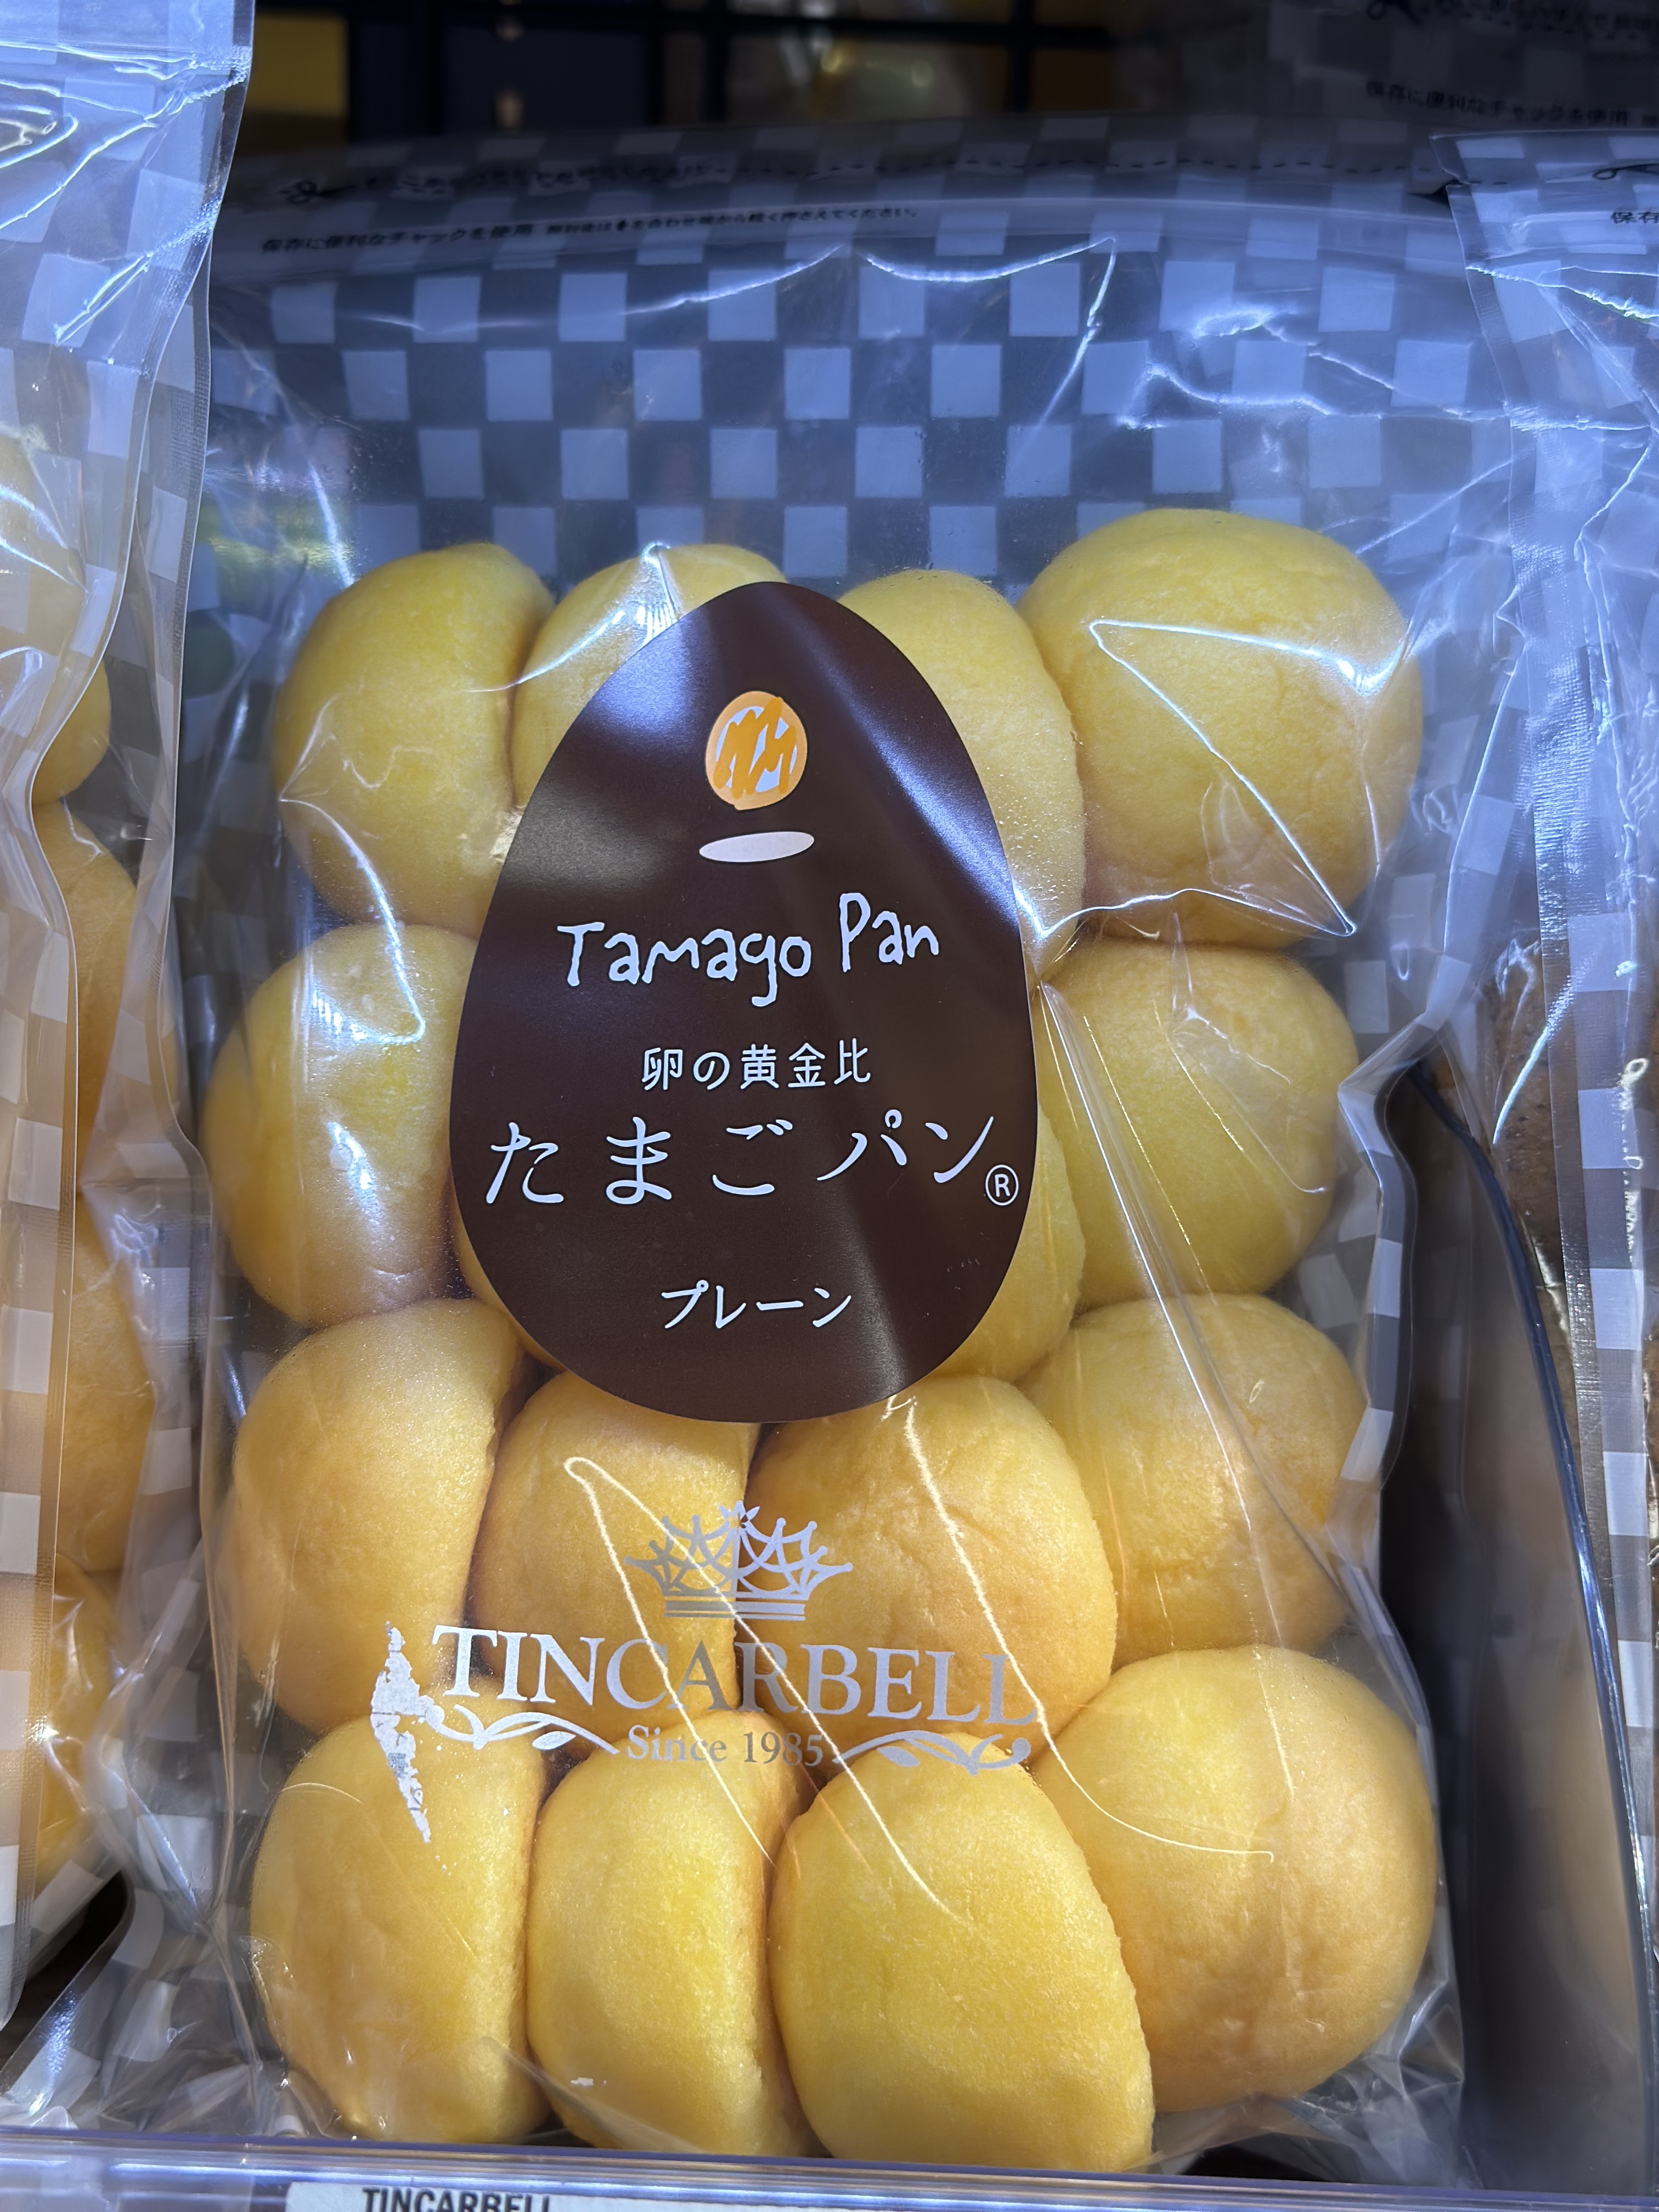 代购正品 日本进口 TINCARBELL鸡蛋包/鸡蛋包糕点零食 原味 270克